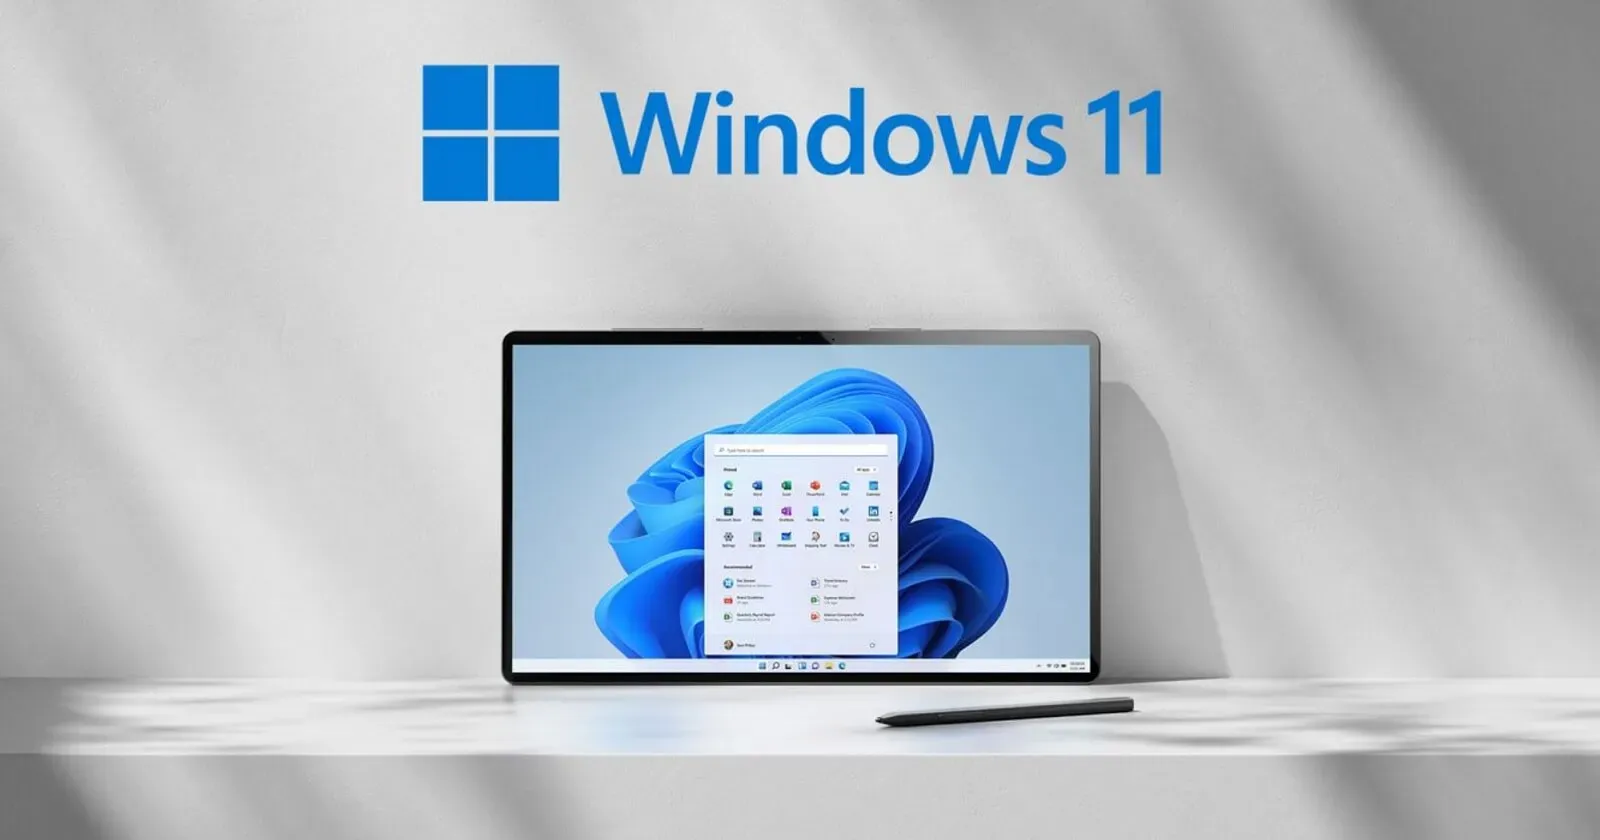 Sortie de Windows 11 KB5017389 (22H2) – Voici les nouveautés et les améliorations